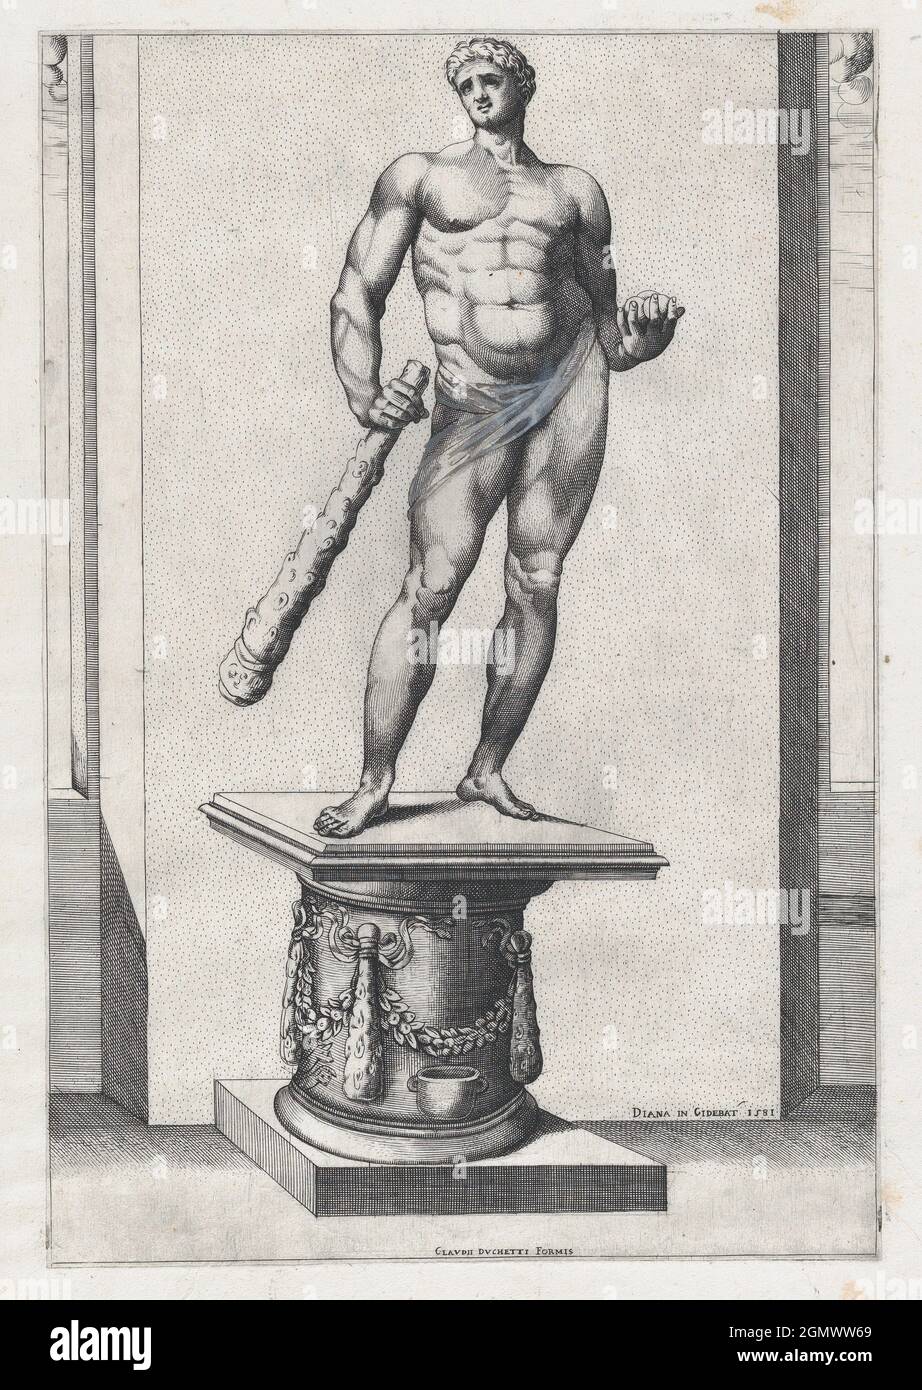 Speculum Romanae Magnificentiae: Hercules with the apples of the Hesperides. Series/Portfolio: Speculum Romanae Magnificentiae; Artist: Diana Stock Photo